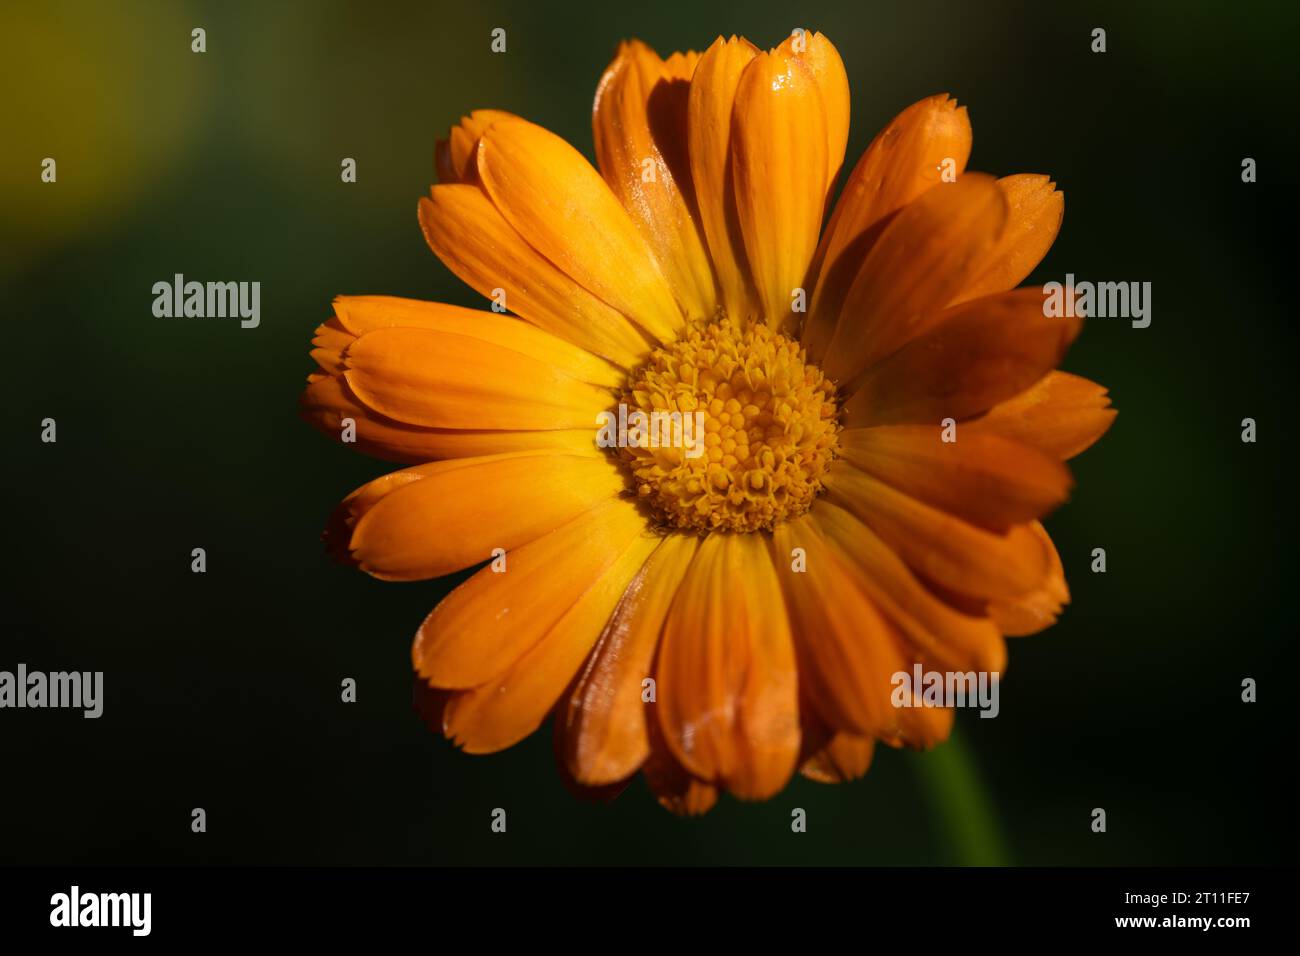 Nahaufnahme einer orangen blühenden Ringelblume, deren Blüte sich geöffnet hat. Der Hintergrund ist grün. Man kann den Pollen deutlich sehen. Stockfoto